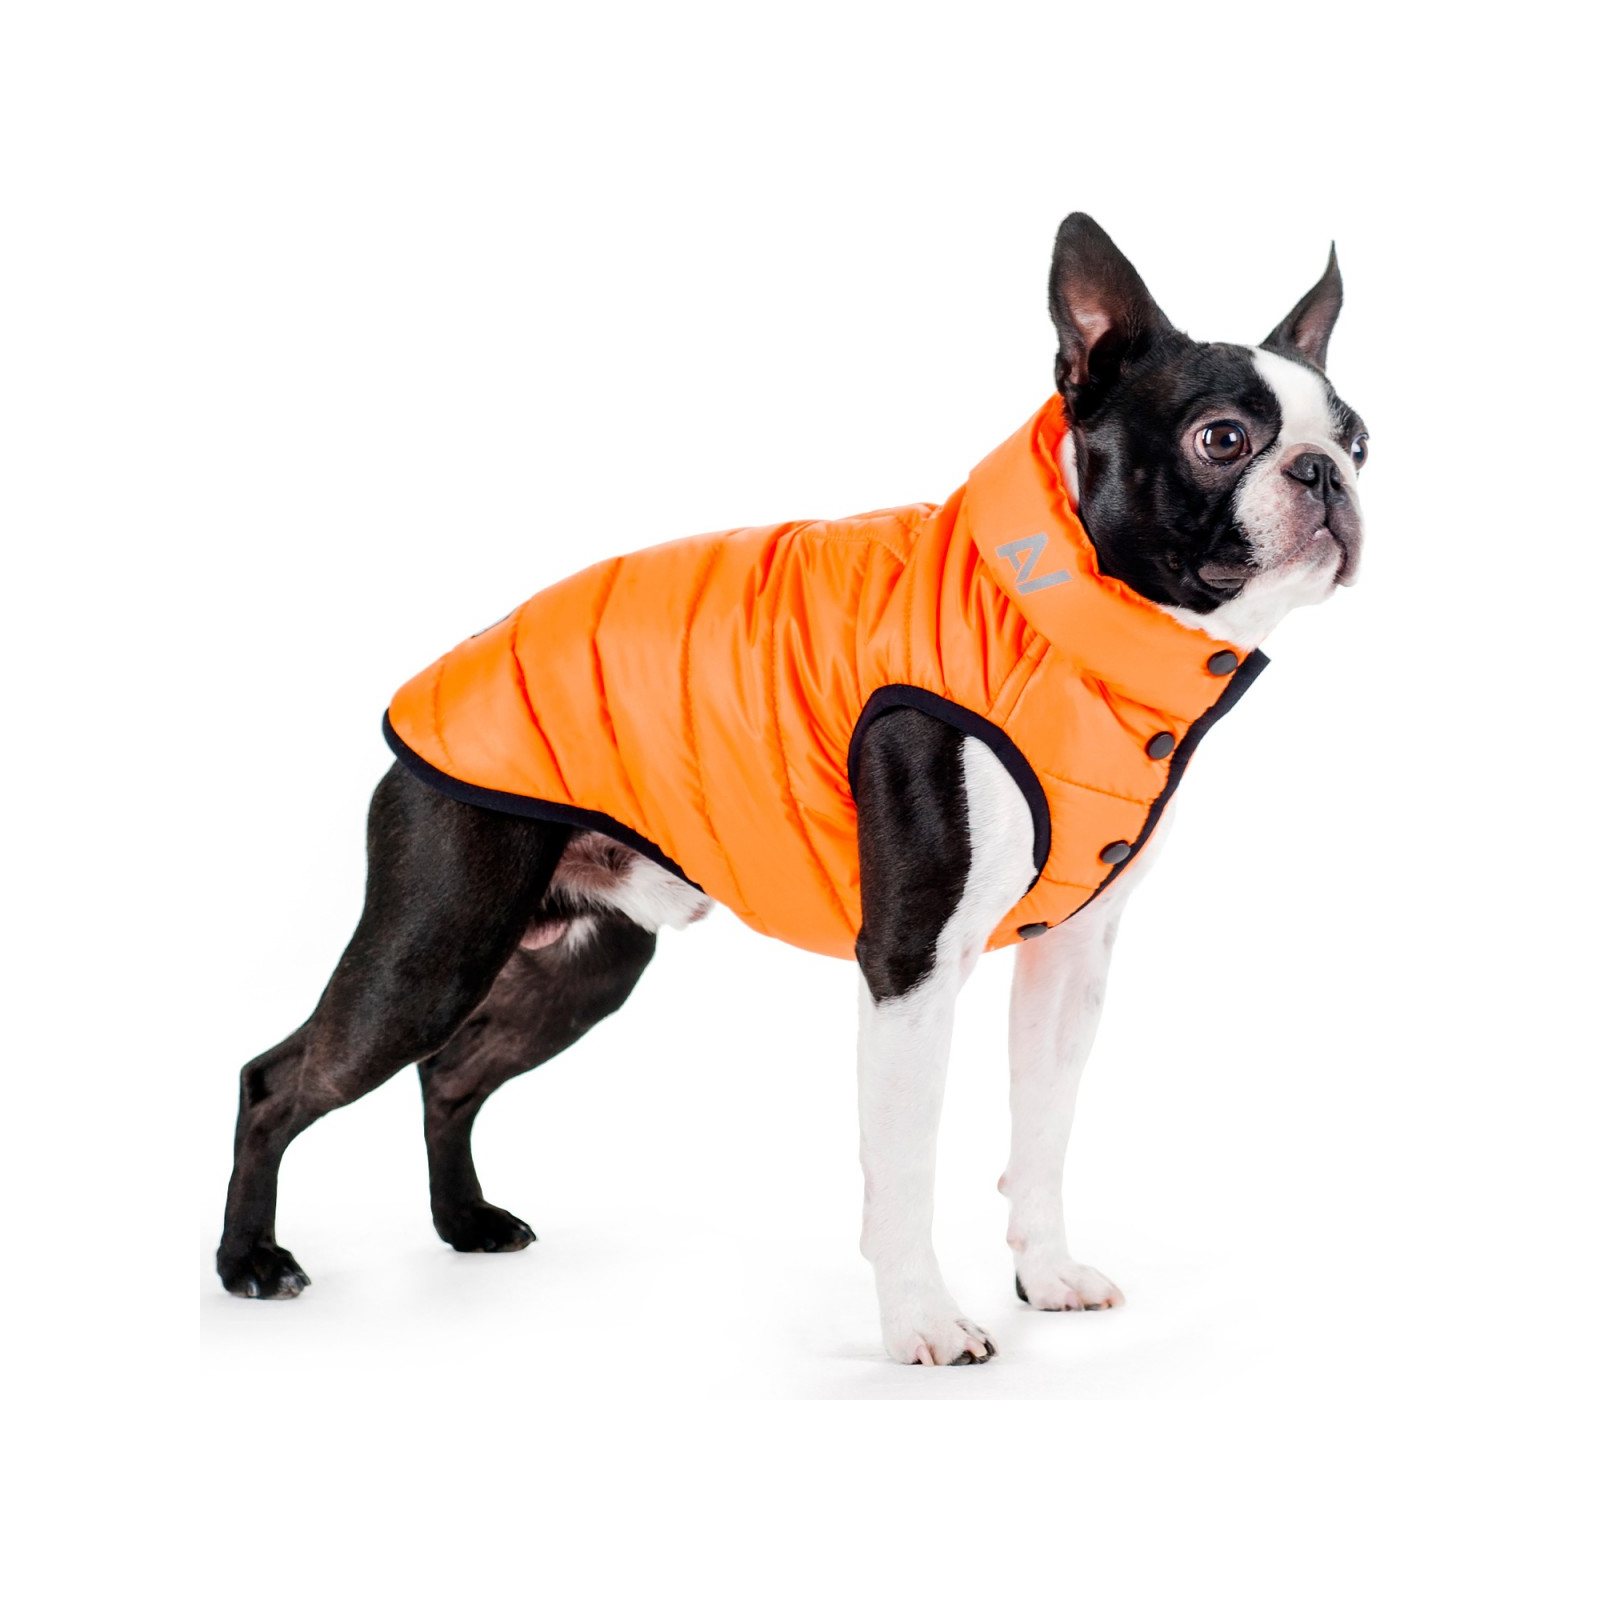 Курточка для животных Airy Vest One S 30 оранжевая (20644)